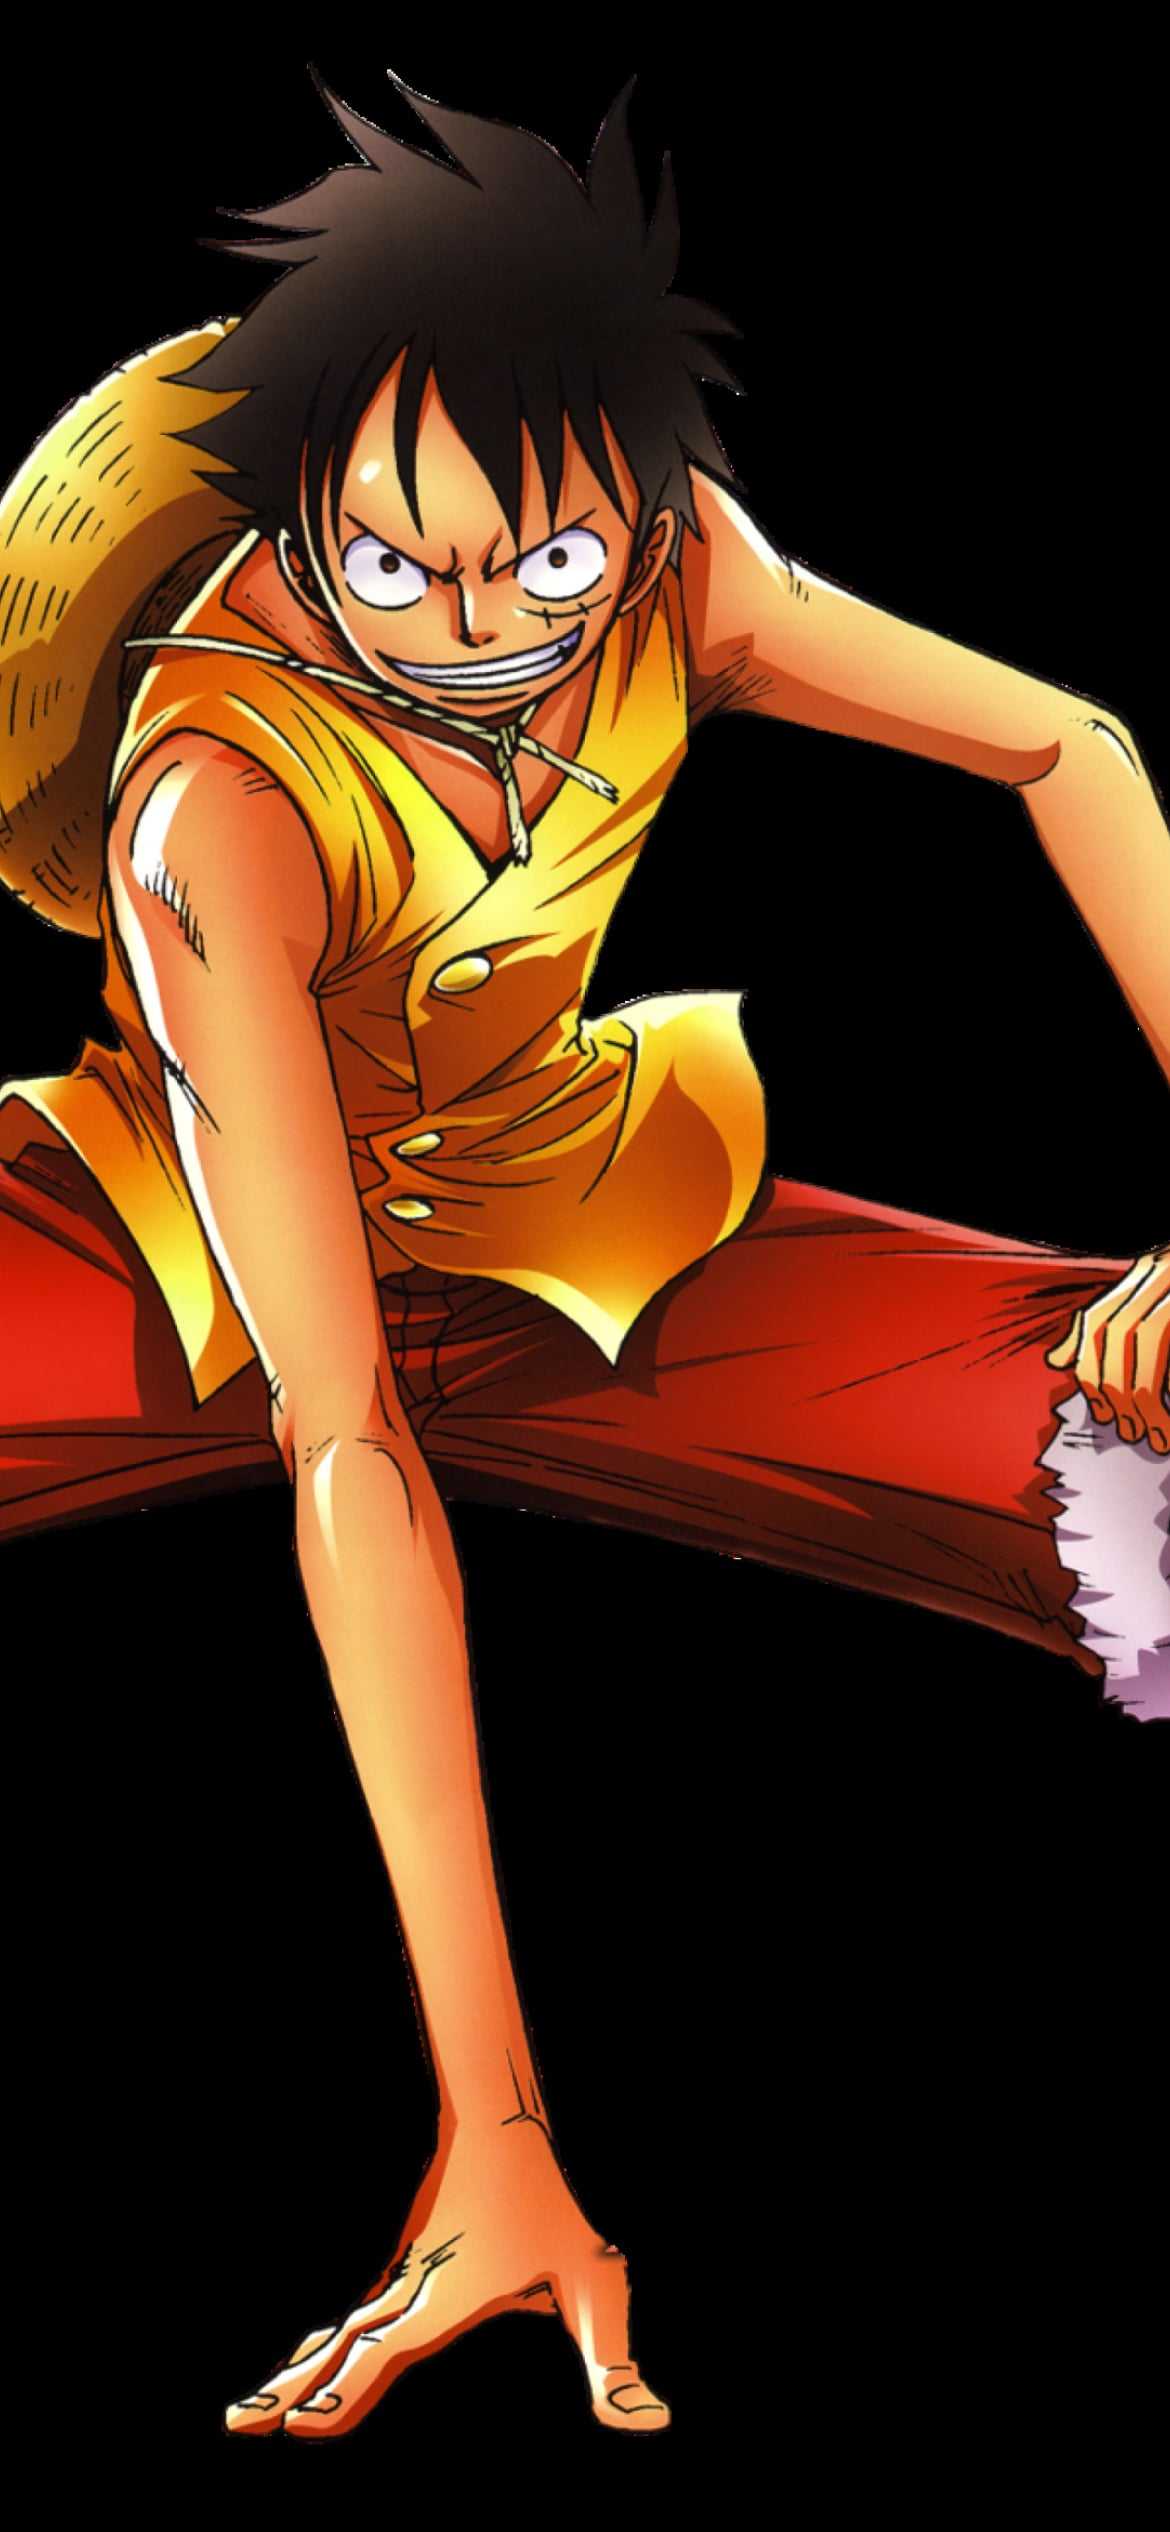 Nếu bạn yêu thích anime One Piece, bạn không thể bỏ lỡ hình ảnh về Luffy - nhân vật chính của bộ truyện này. Hãy xem Luffy phiêu lưu trong thế giới hải tặc và trở thành Vua Hải Tặc mạnh mẽ như thế nào!